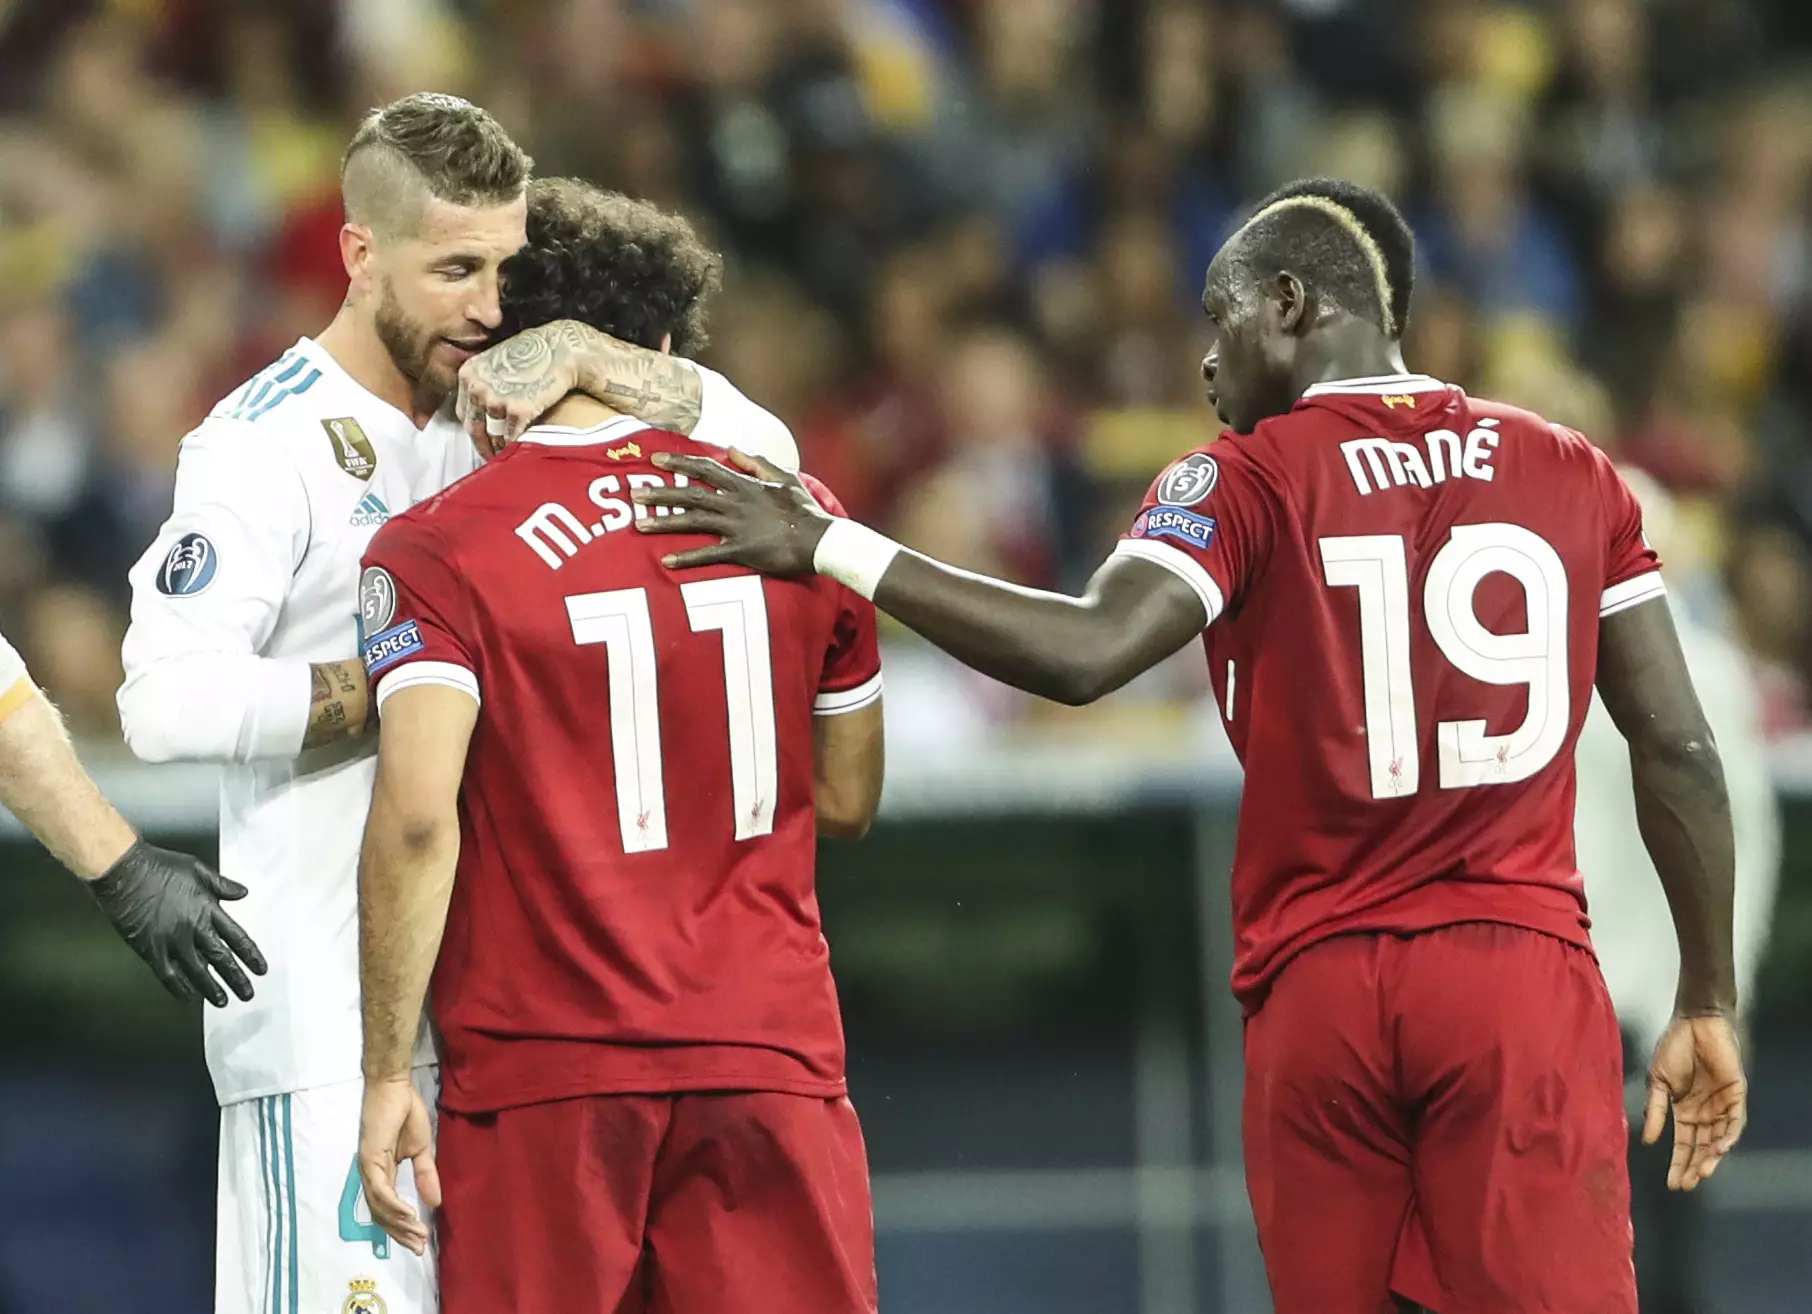 Ramos consoles Salah. Image: PA